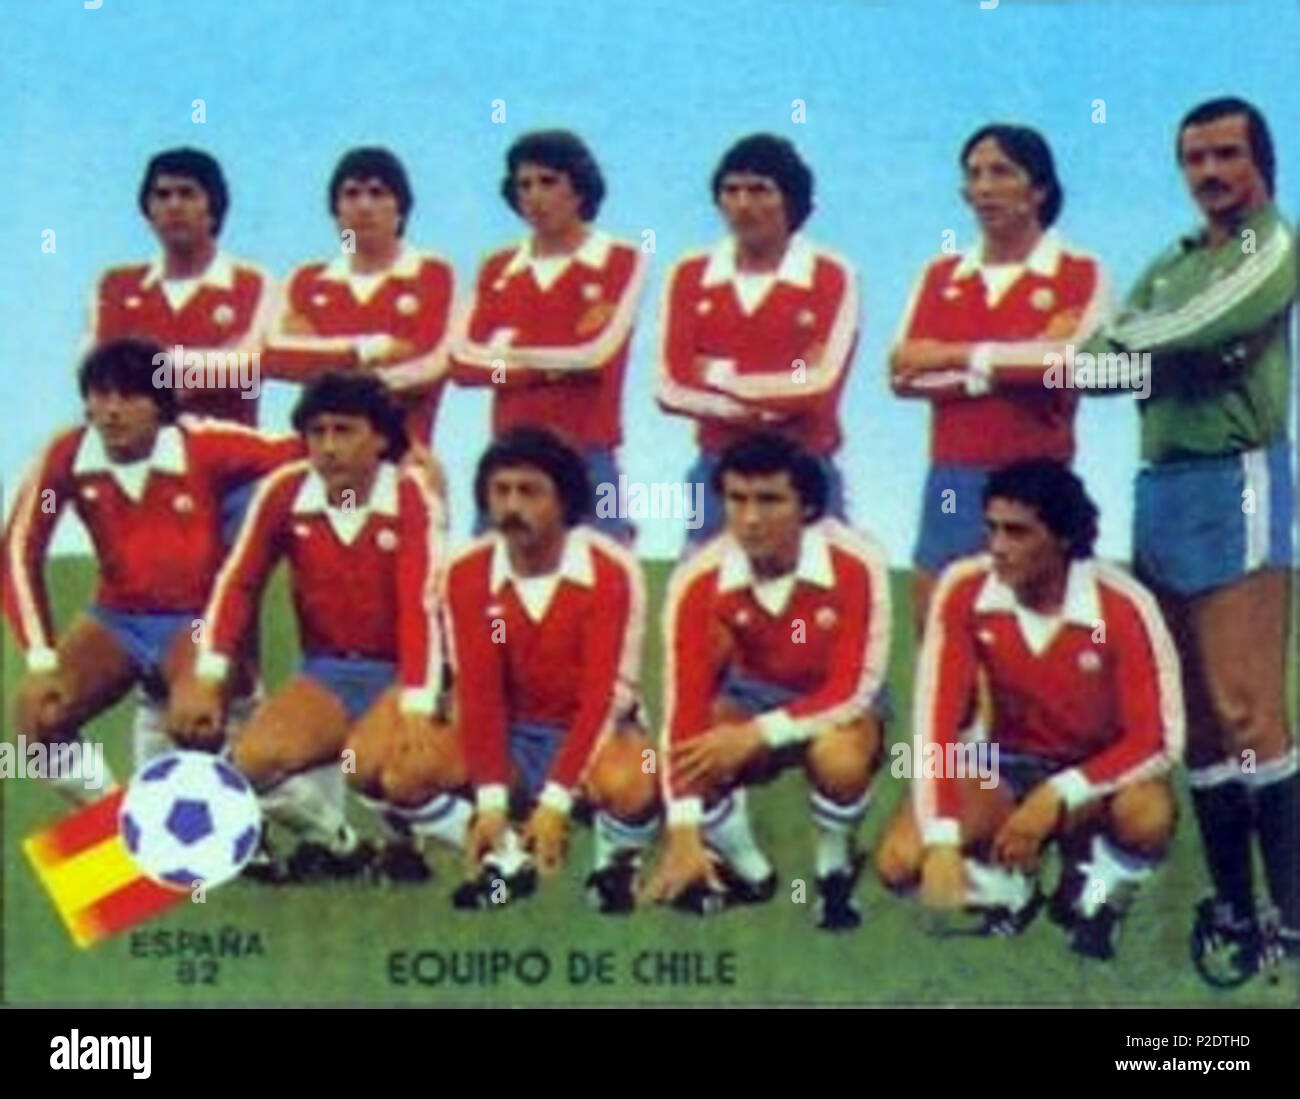 Gran Barrera de Coral congelador Refrescante 51 Selección chilena futbol-Mundial España 1982 Stock Photo - Alamy